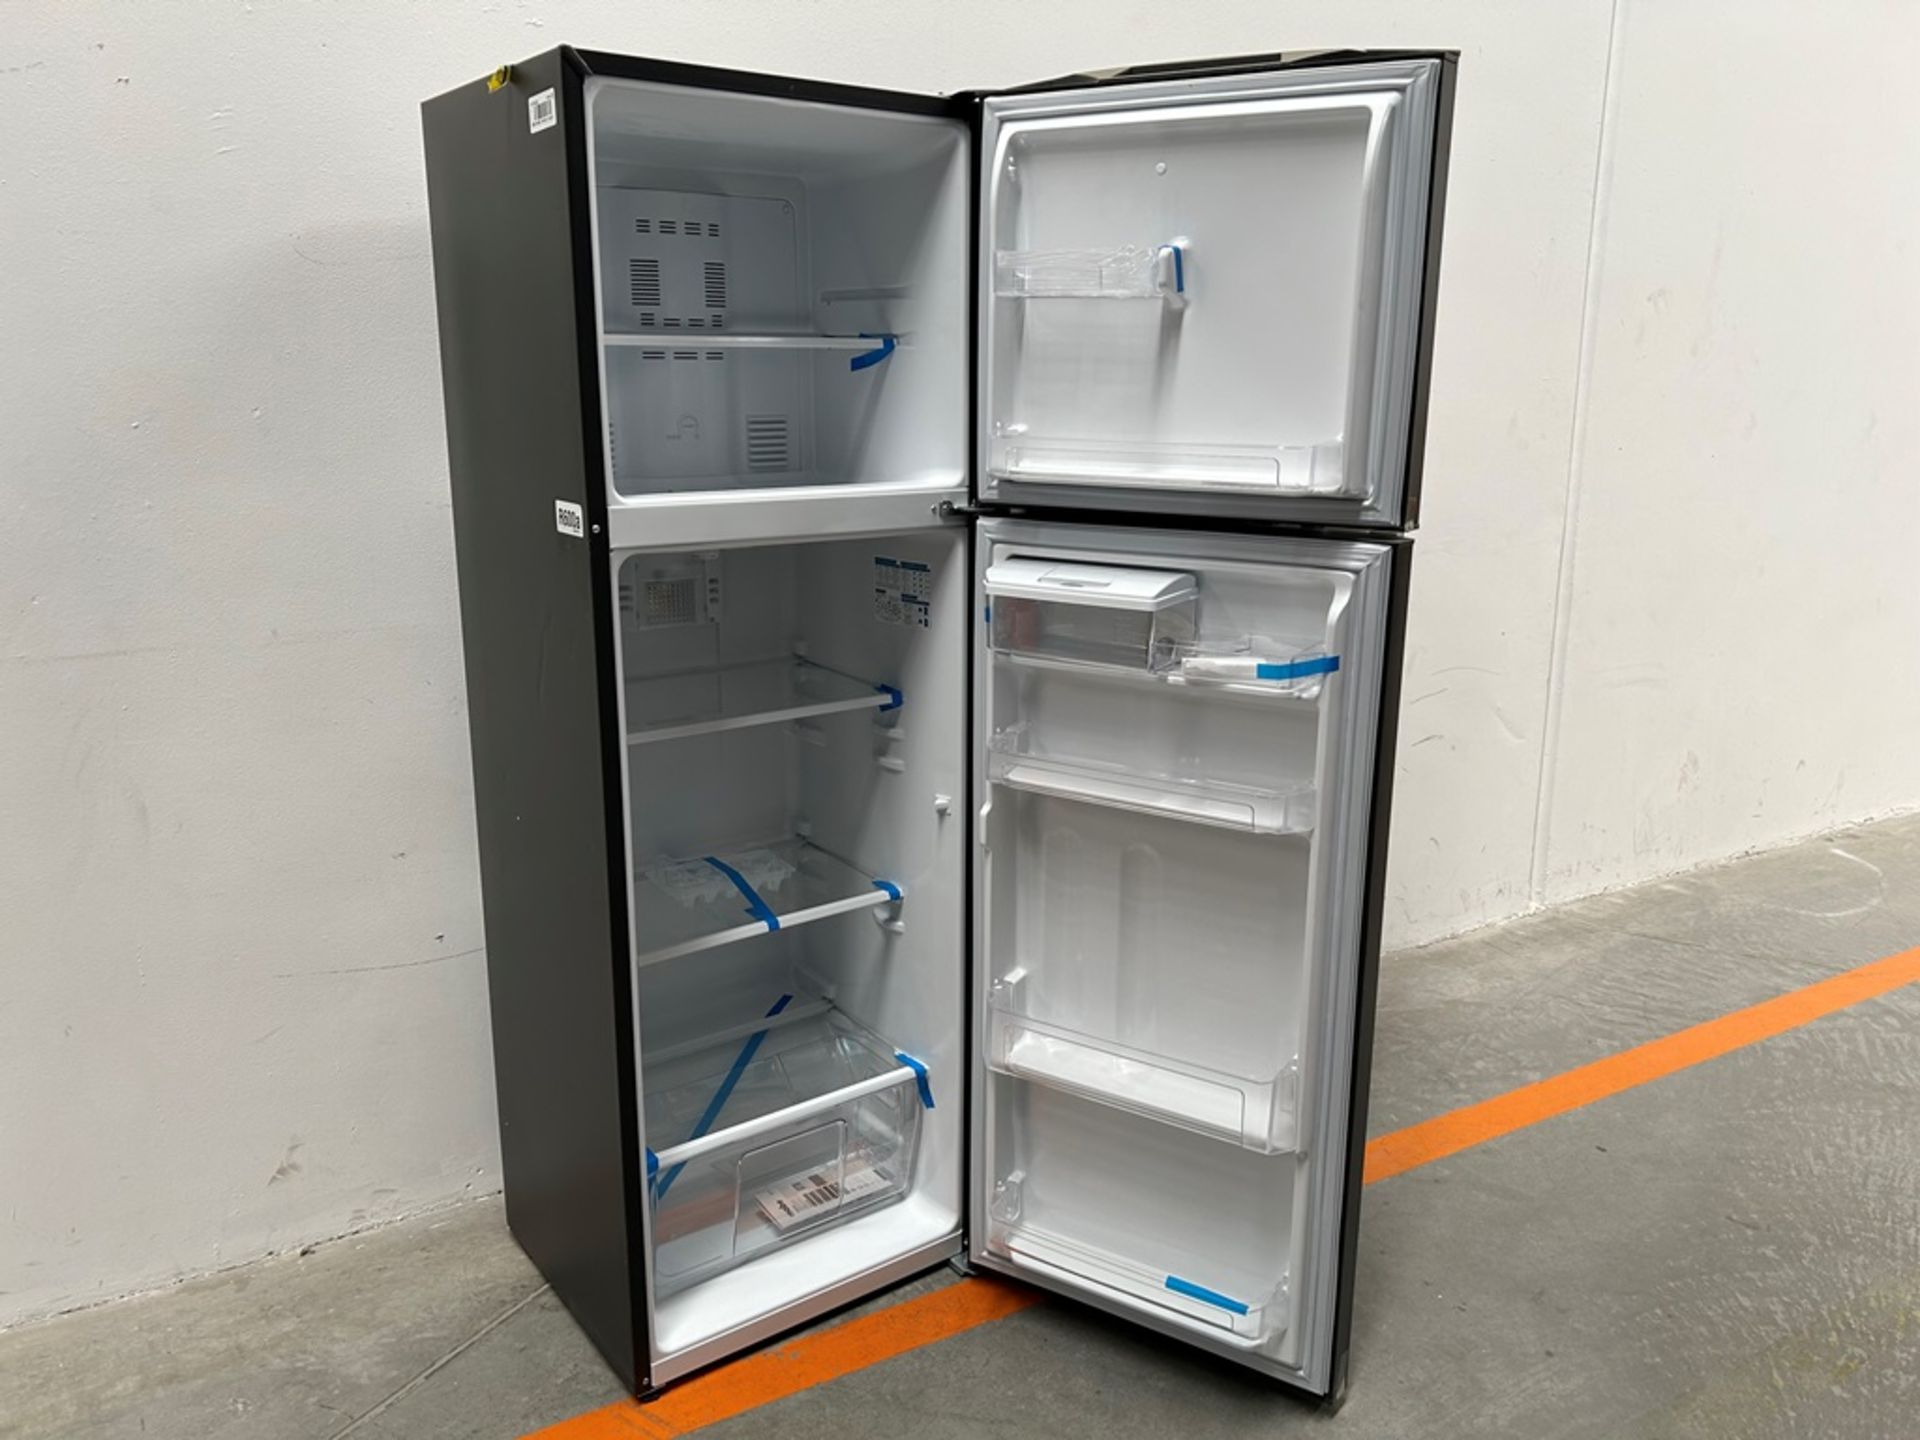 Lote de 2 refrigeradores contiene: 1 refrigerador con dispensador de agua Marca MABE, Modelo RMA300 - Image 4 of 18